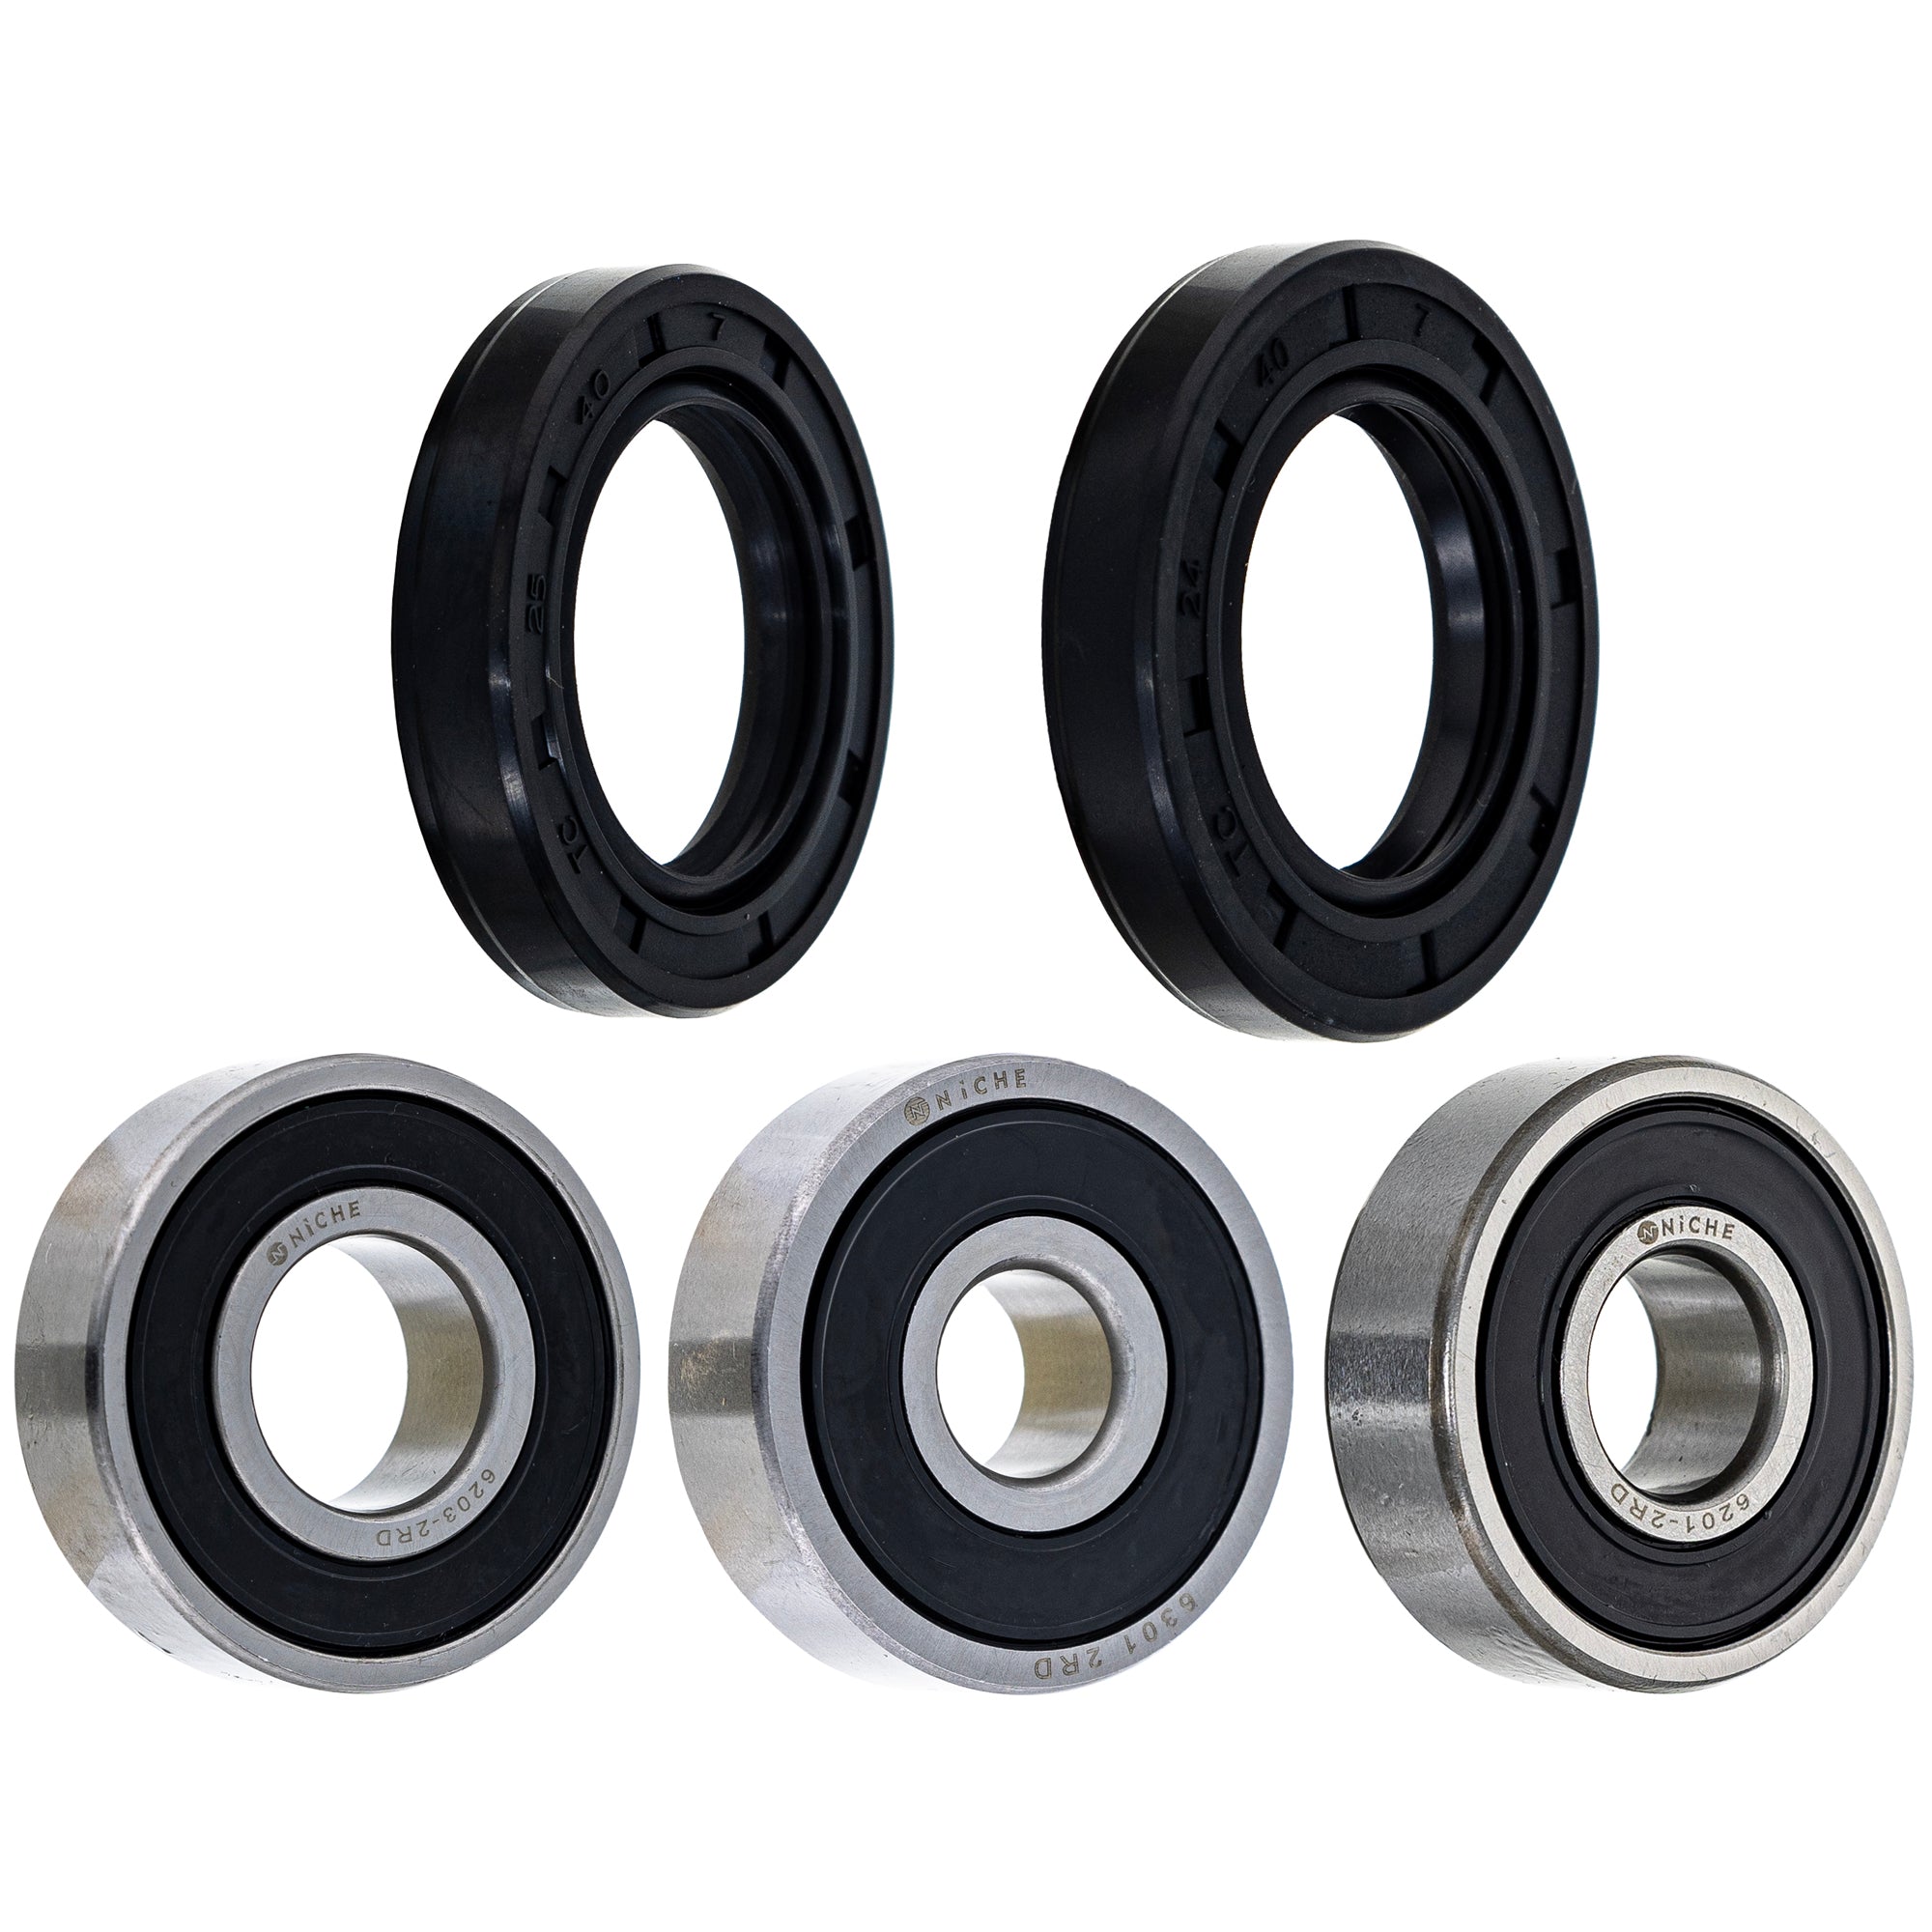 Wheel Bearing Seal Kit for zOTHER KE100 NICHE MK1008837